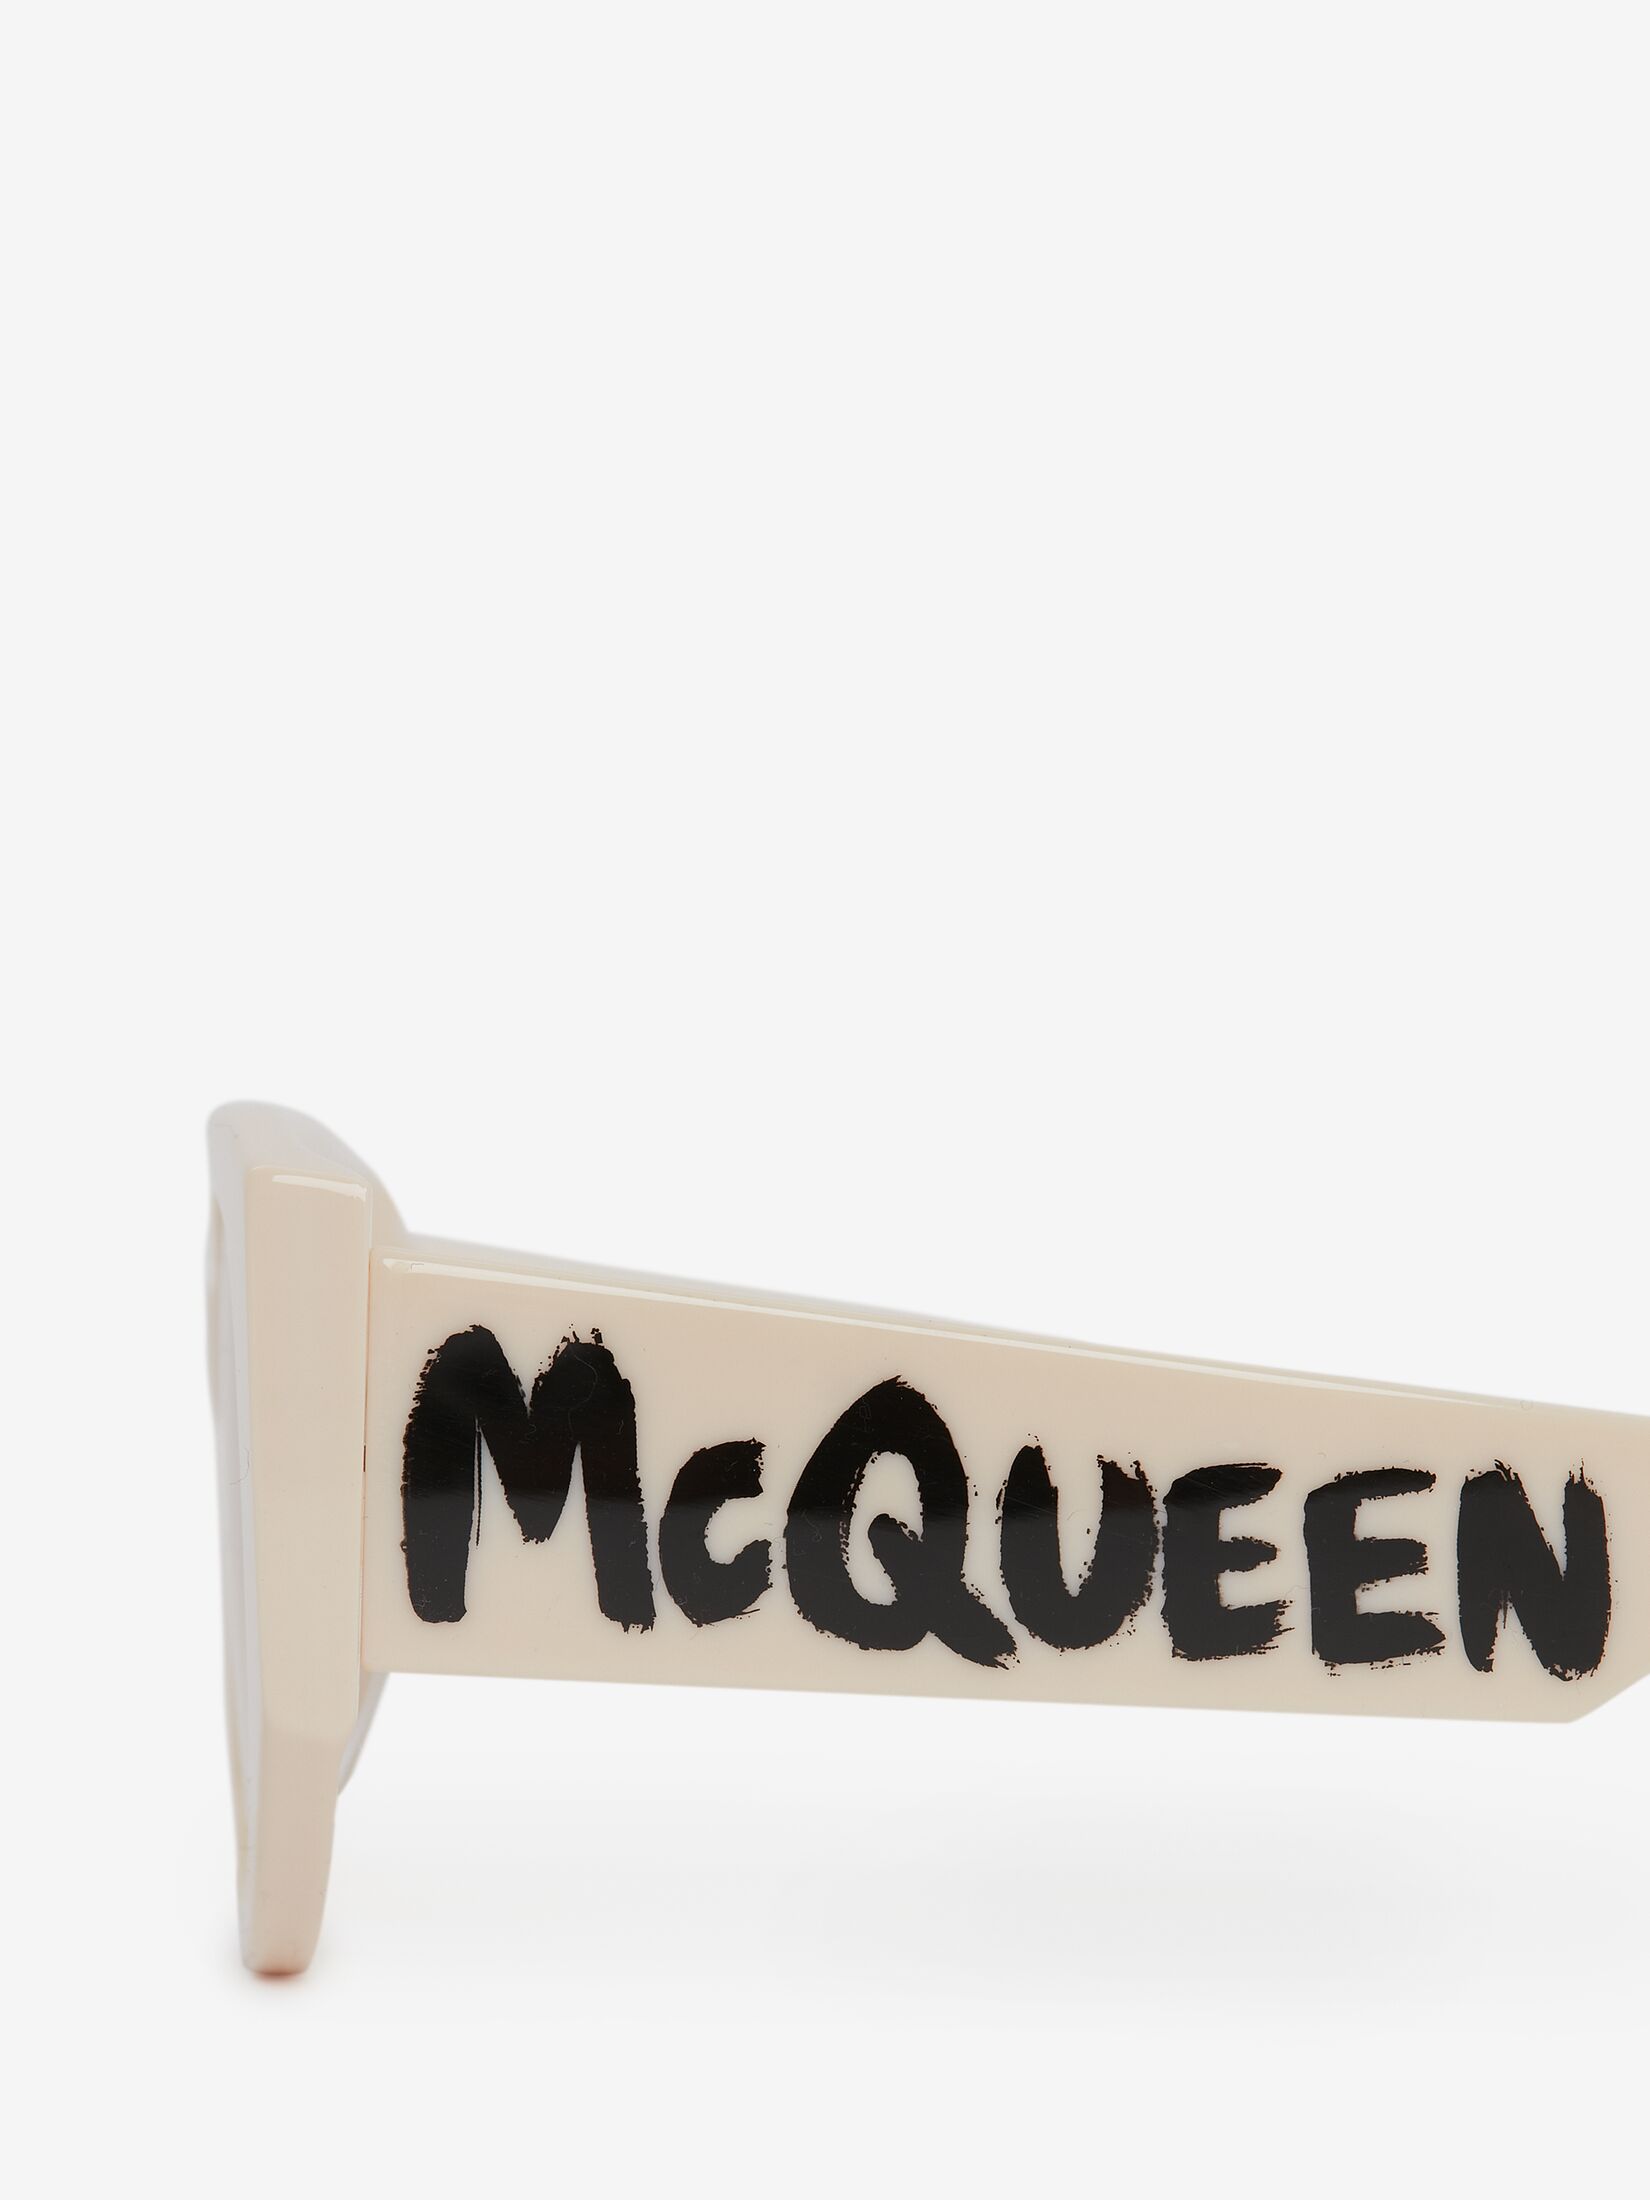 McQueen Graffiti Oval Sunglasses